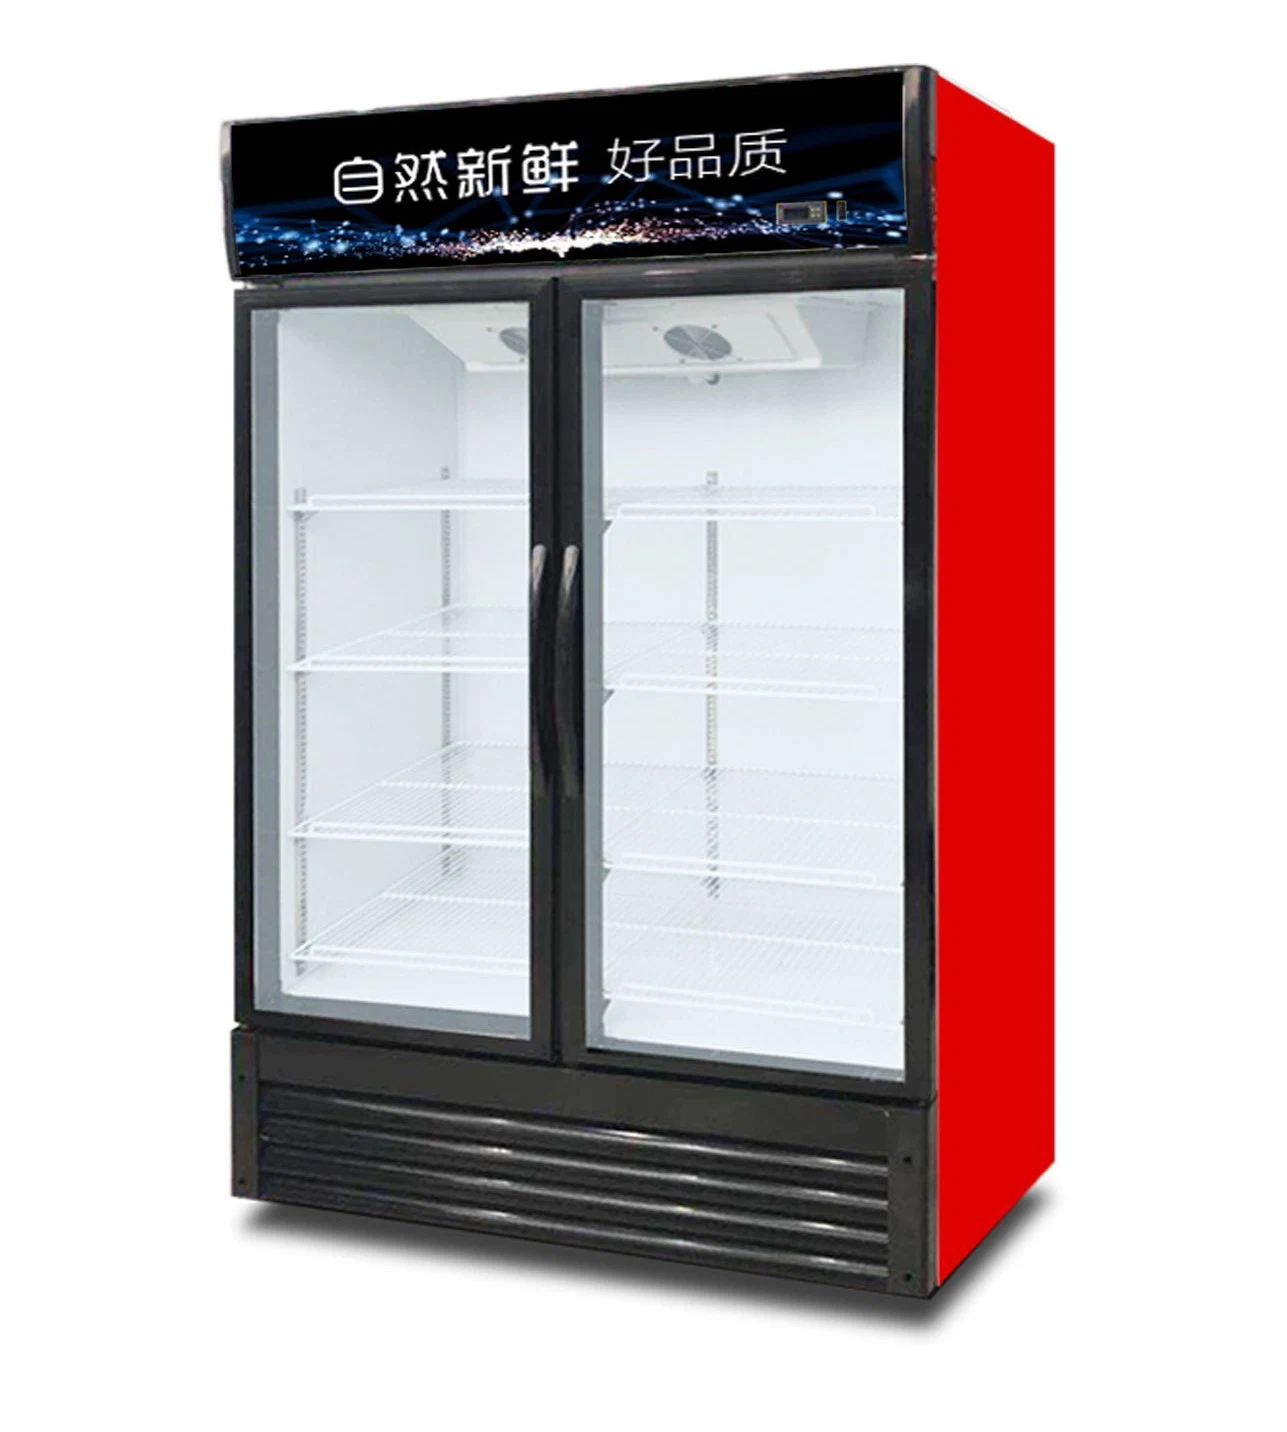 Réfrigérateur à porte vitrée JinBEST C congélateurs réfrigérateurs réfrigérateurs réfrigérateurs à vitrine